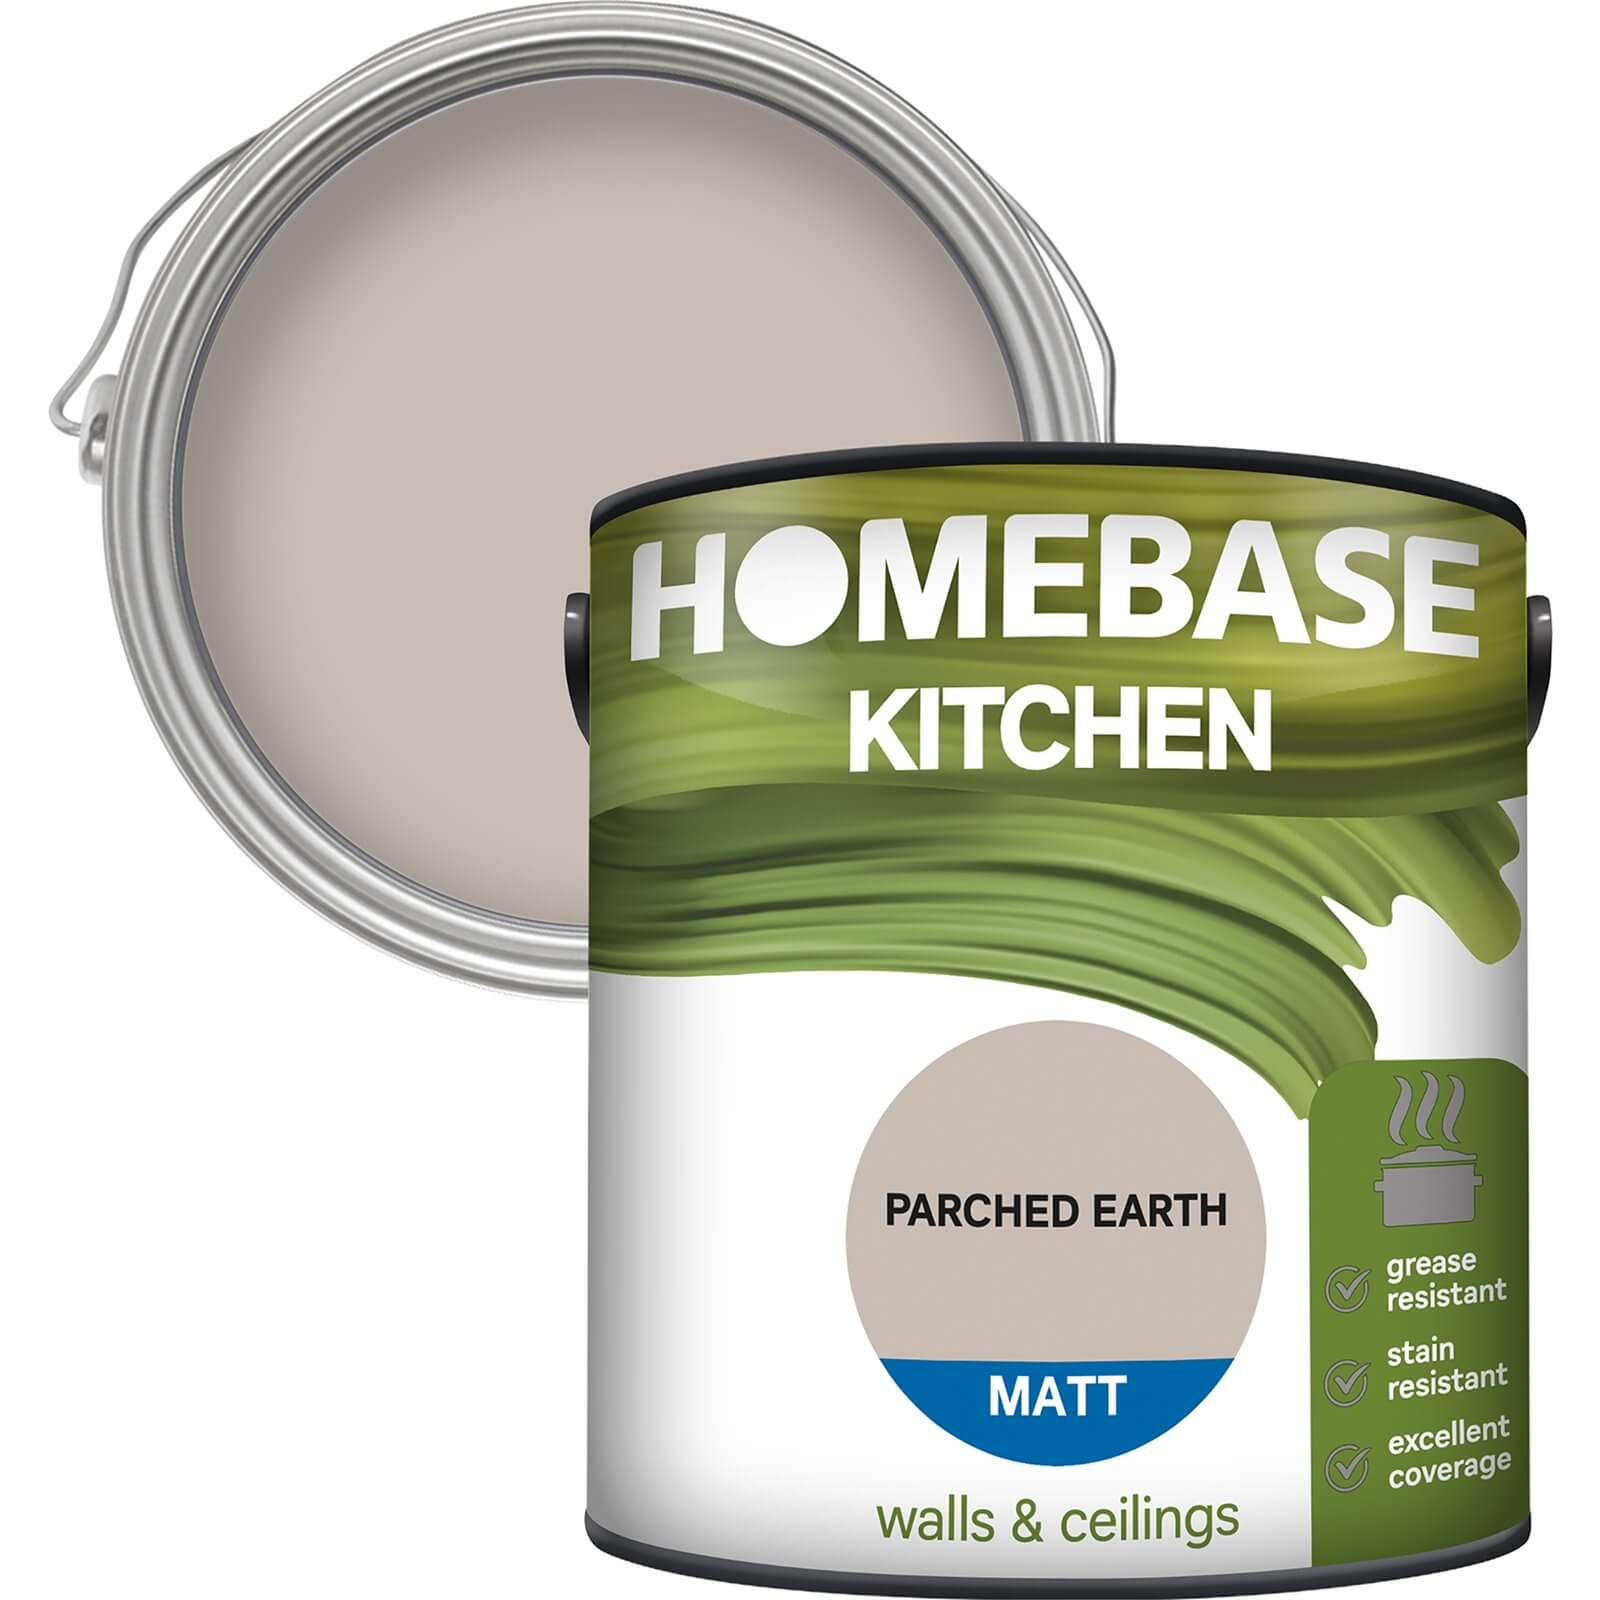 Homebase Kitchen Matt Paint - Parched Earth 2.5L